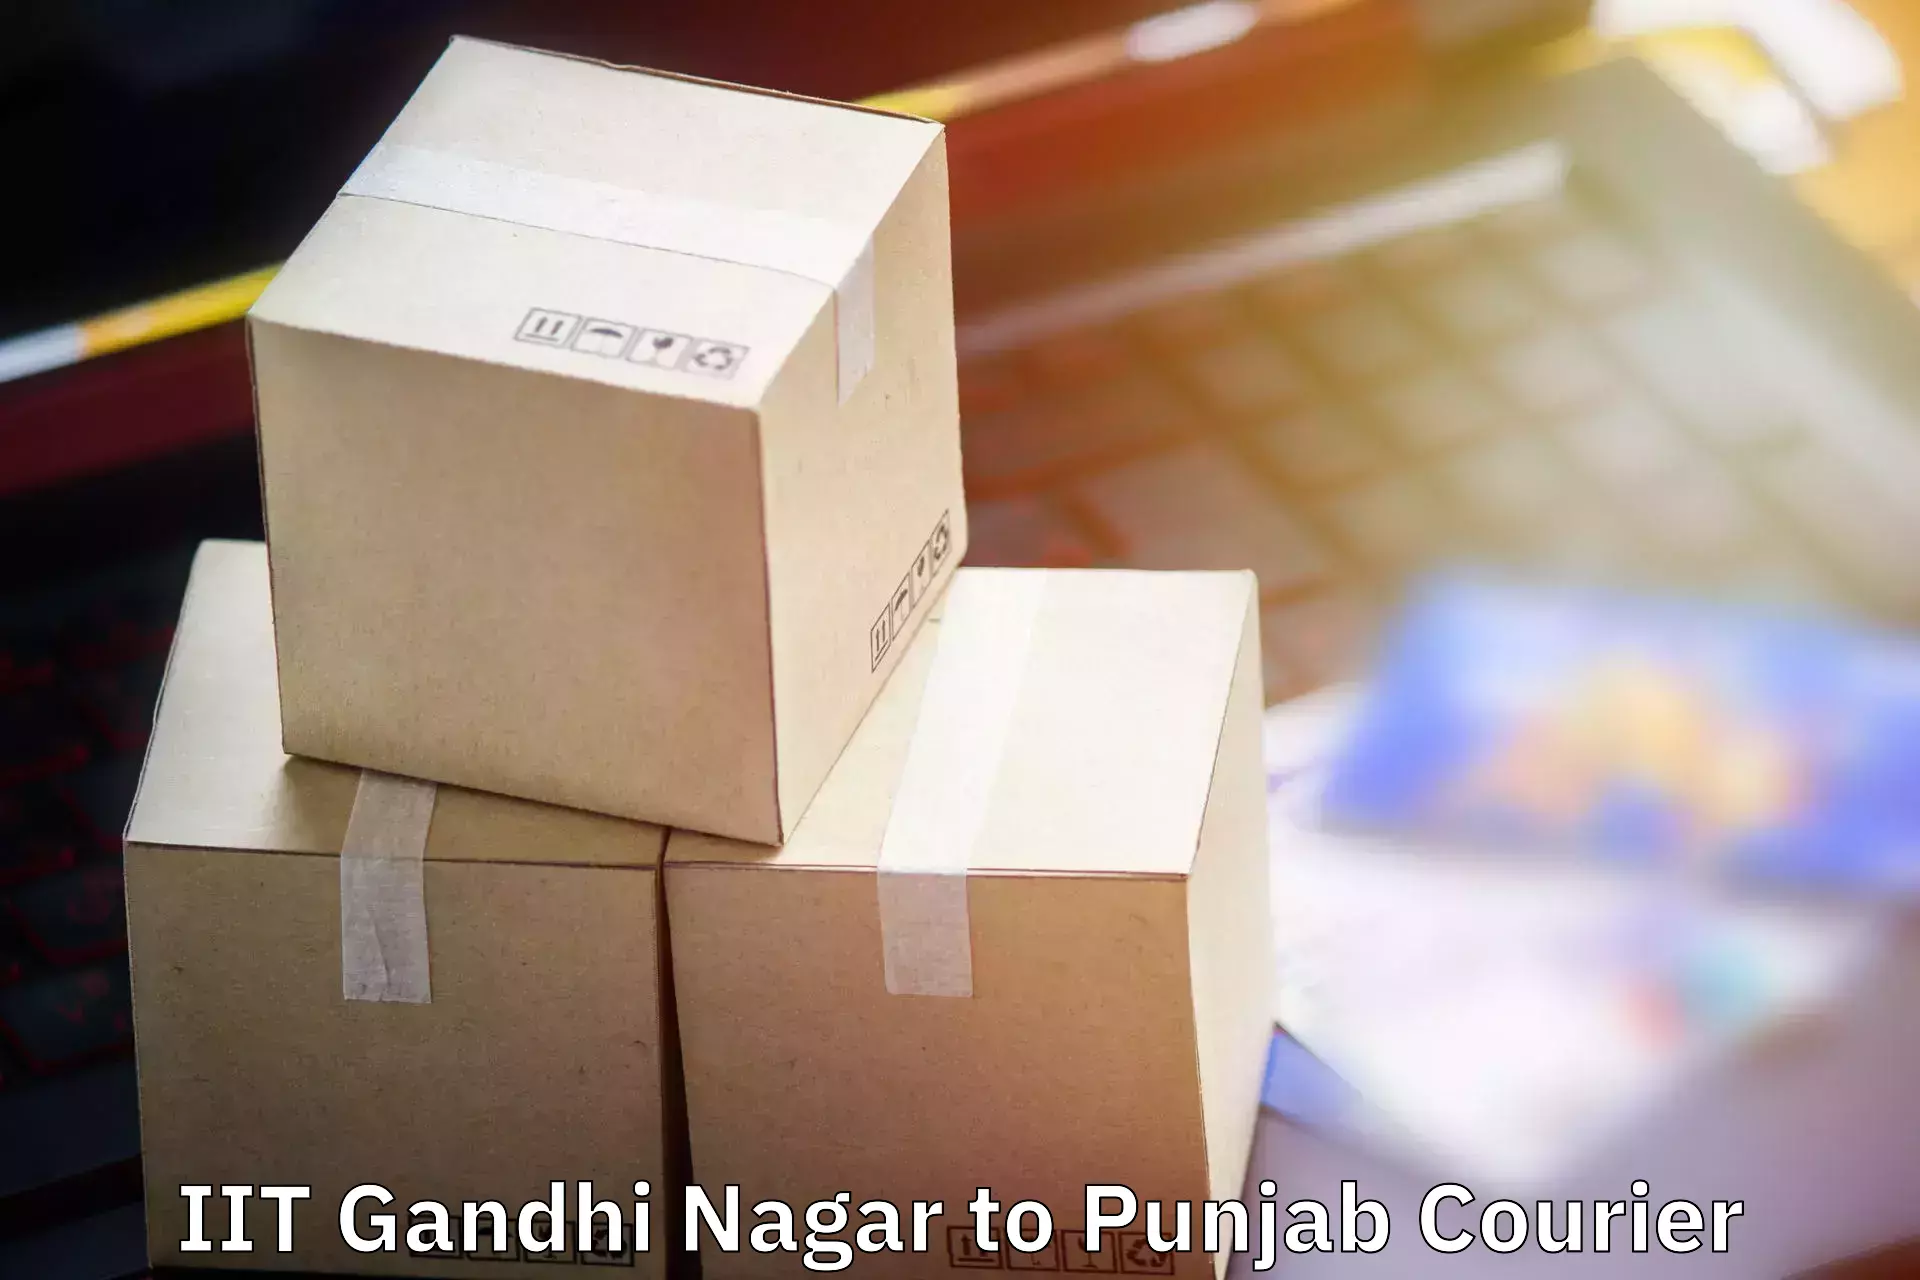 Baggage shipping advice IIT Gandhi Nagar to IIT Ropar